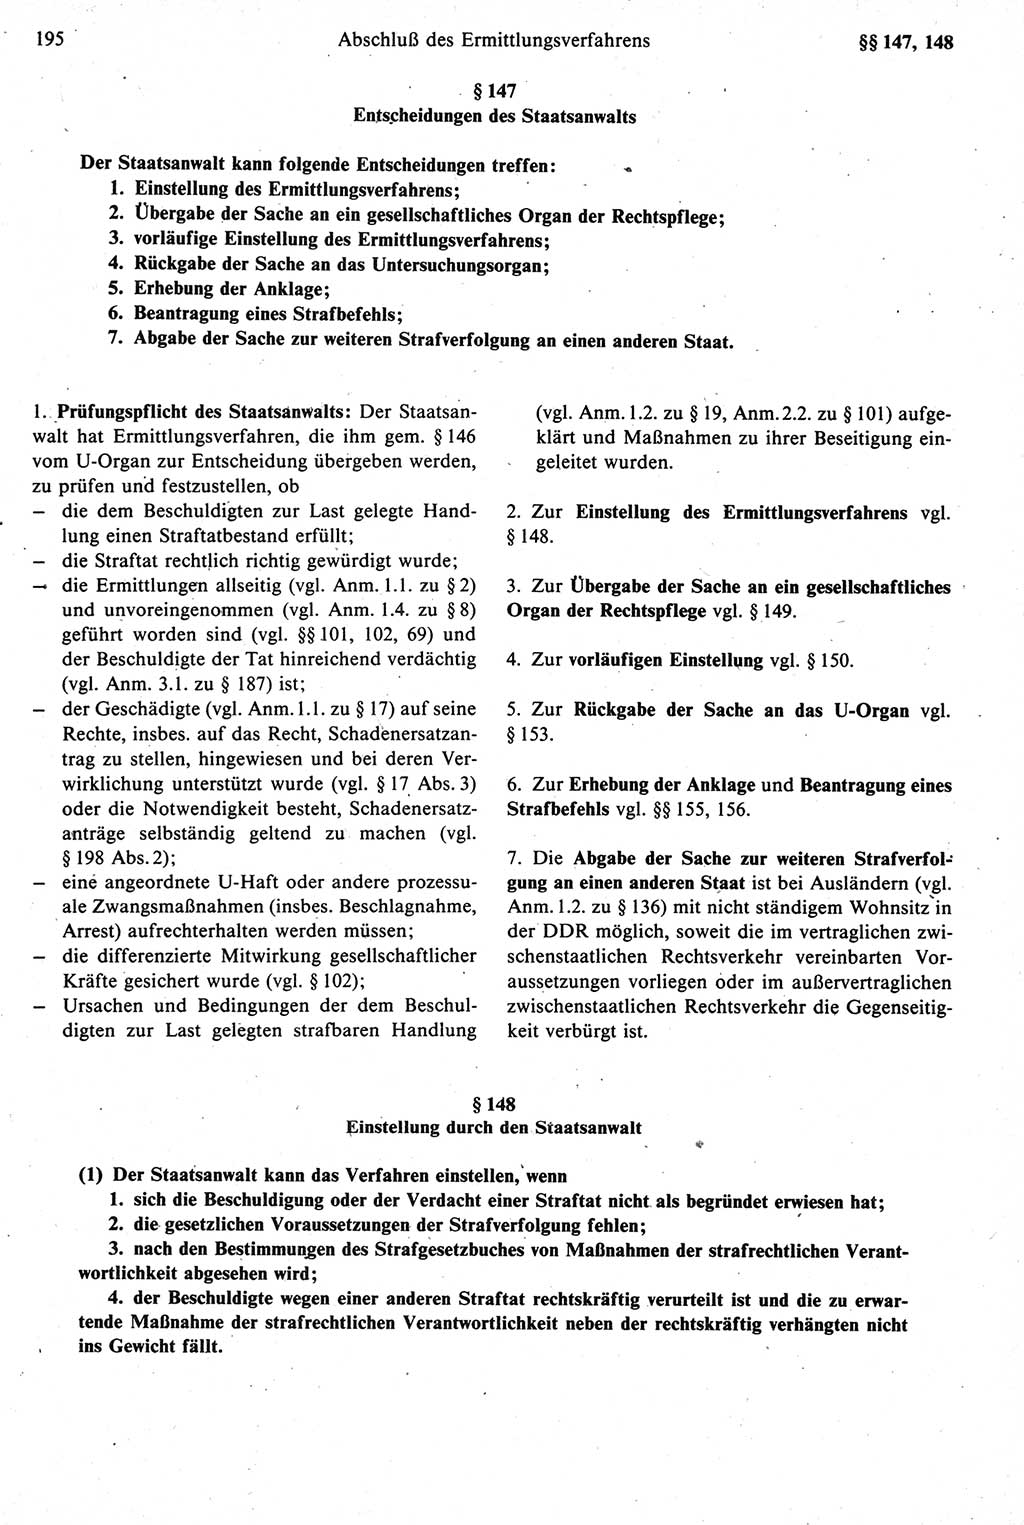 Strafprozeßrecht der DDR [Deutsche Demokratische Republik], Kommentar zur Strafprozeßordnung (StPO) 1987, Seite 195 (Strafprozeßr. DDR Komm. StPO 1987, S. 195)